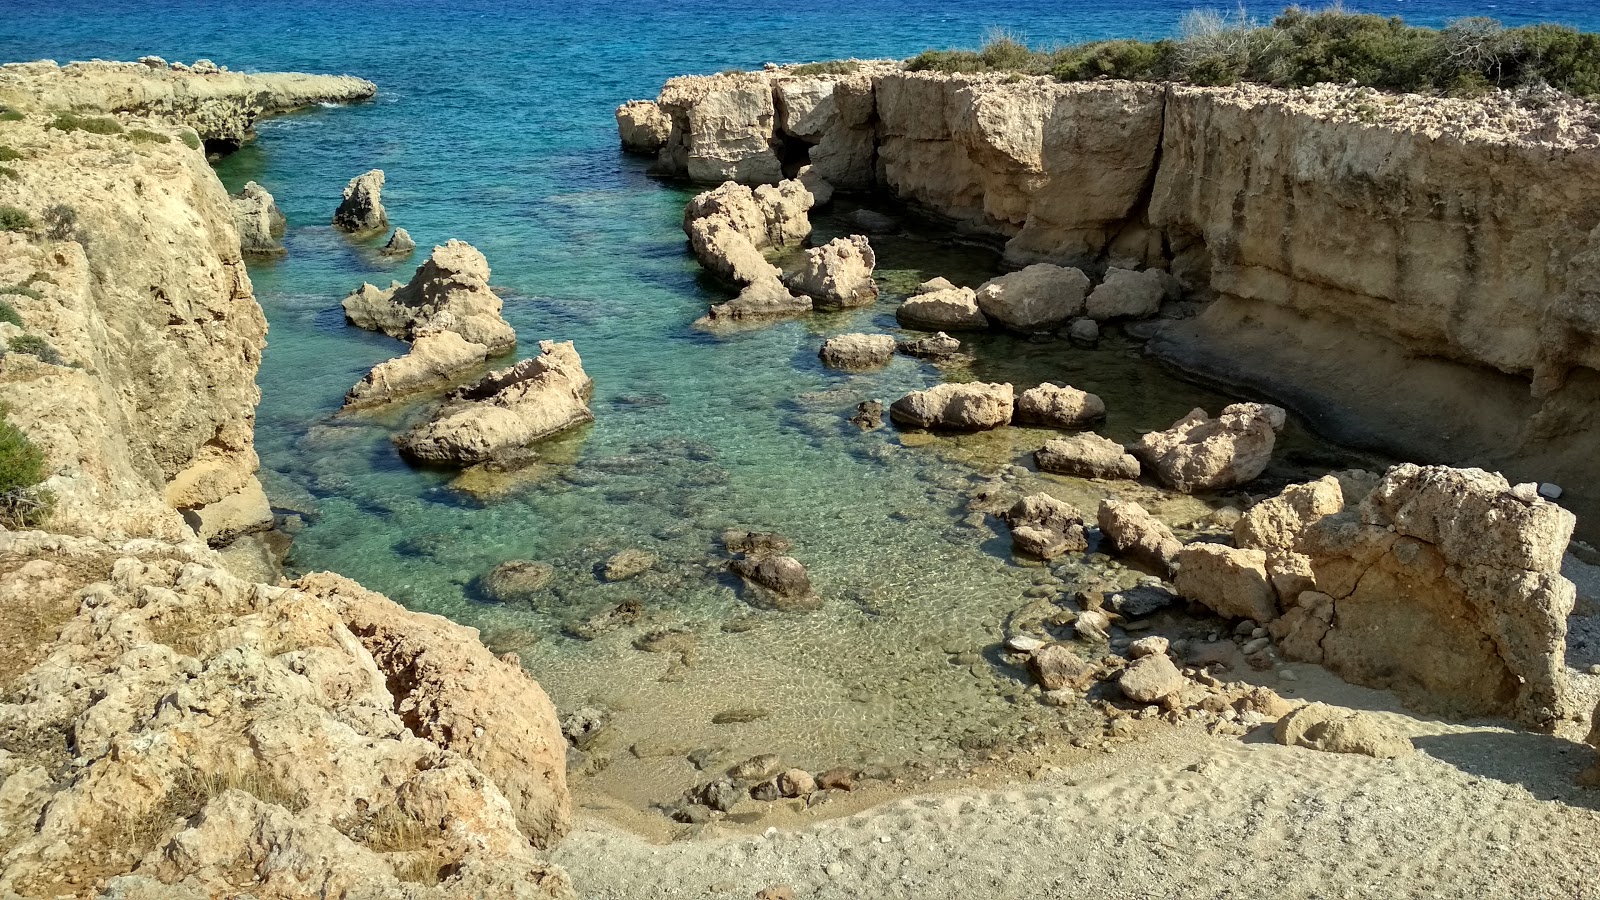 Pouliou beach'in fotoğrafı parlak kum ve kayalar yüzey ile